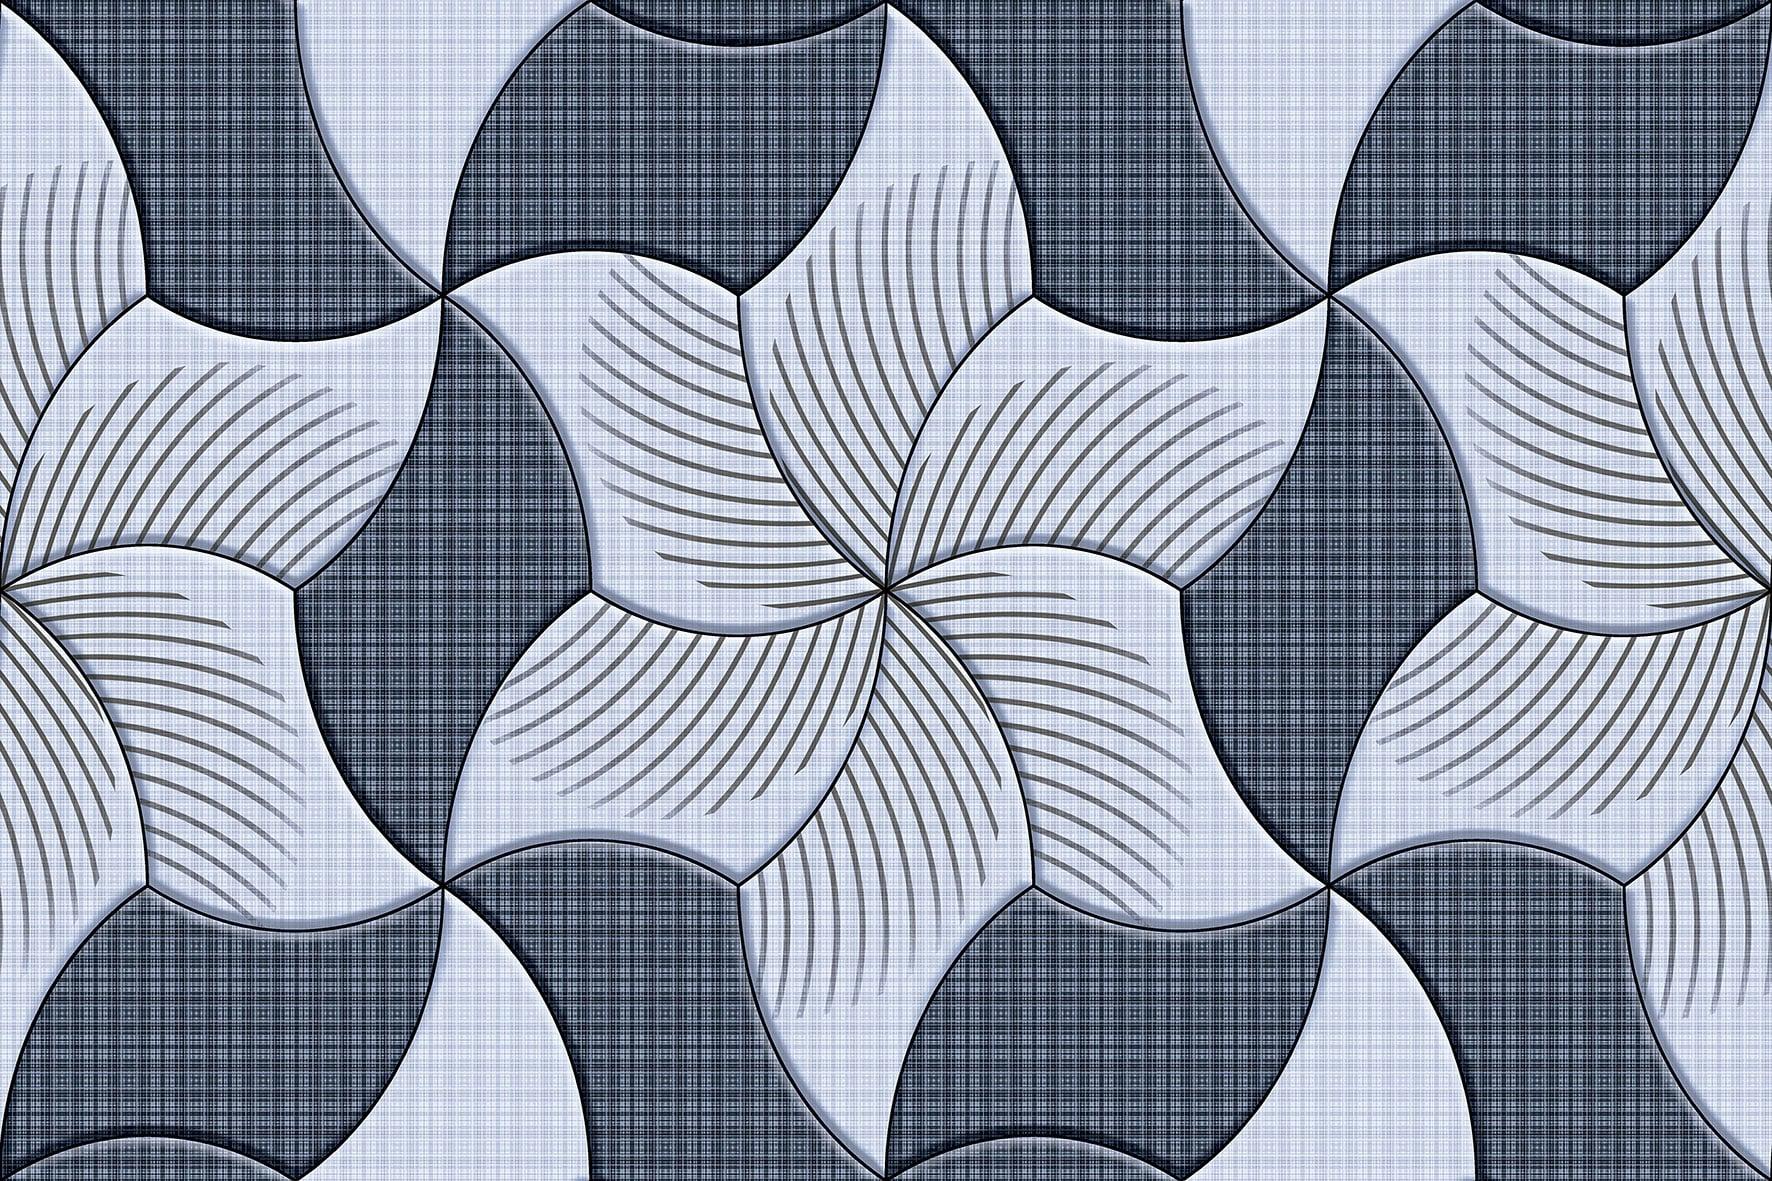 Geometric Tiles for Bathroom Tiles, Kitchen Tiles